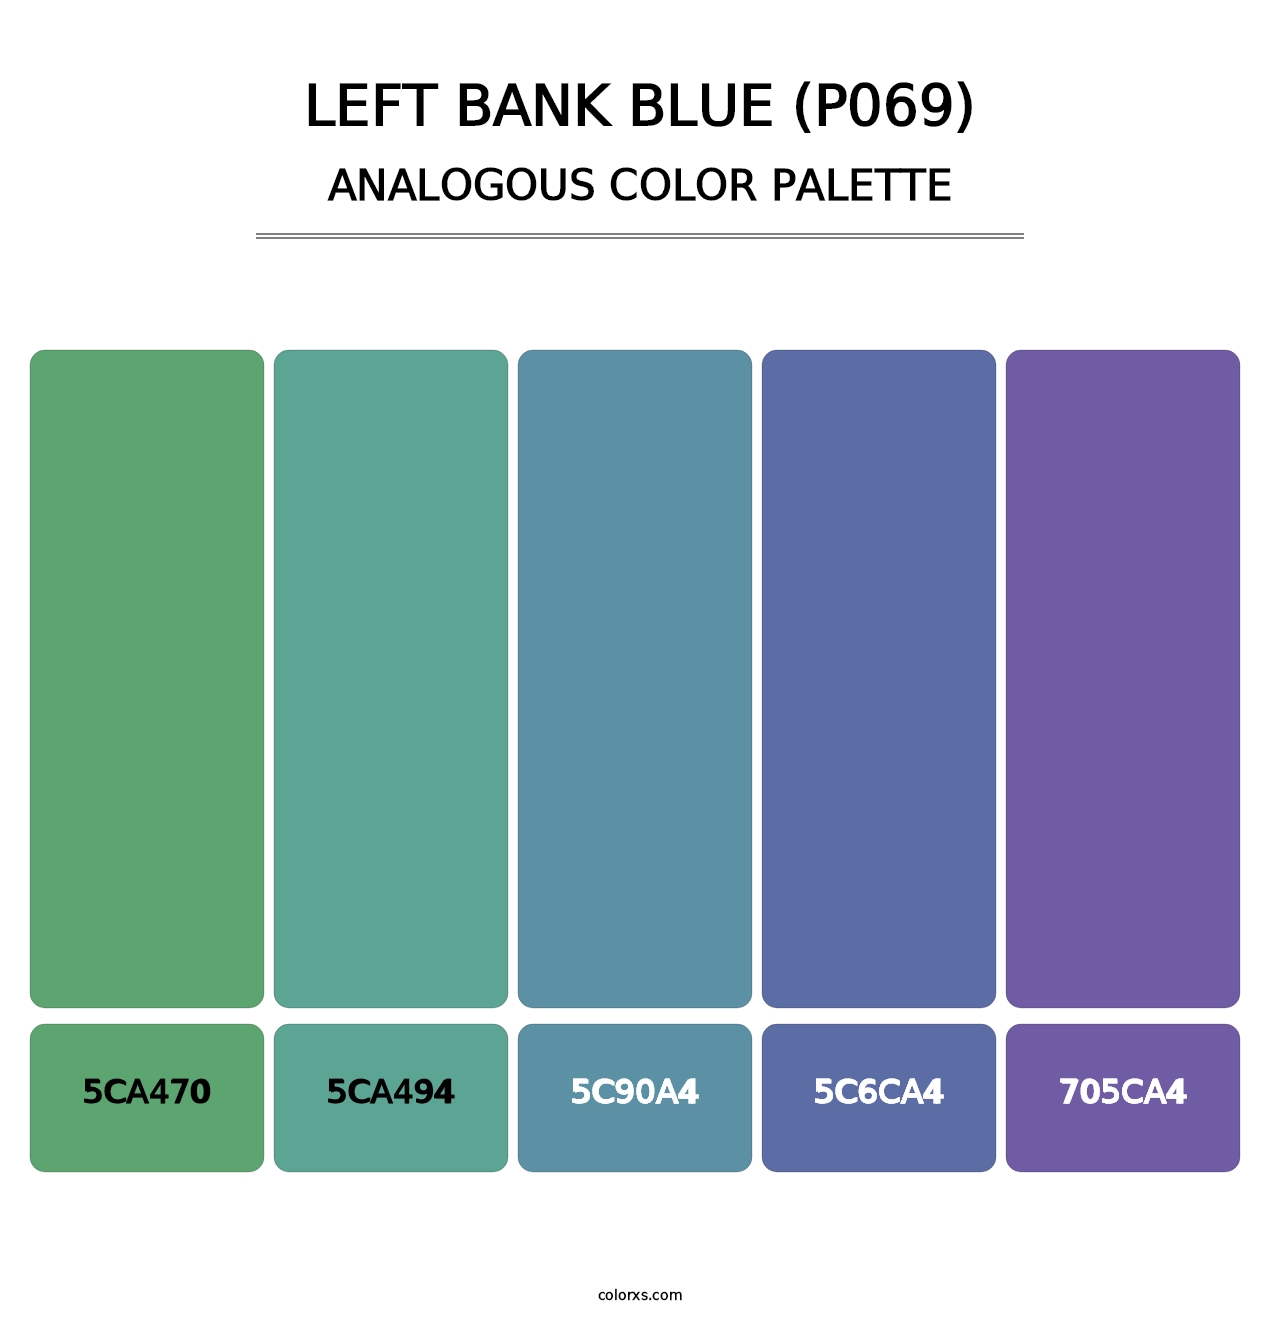 Left Bank Blue (P069) - Analogous Color Palette